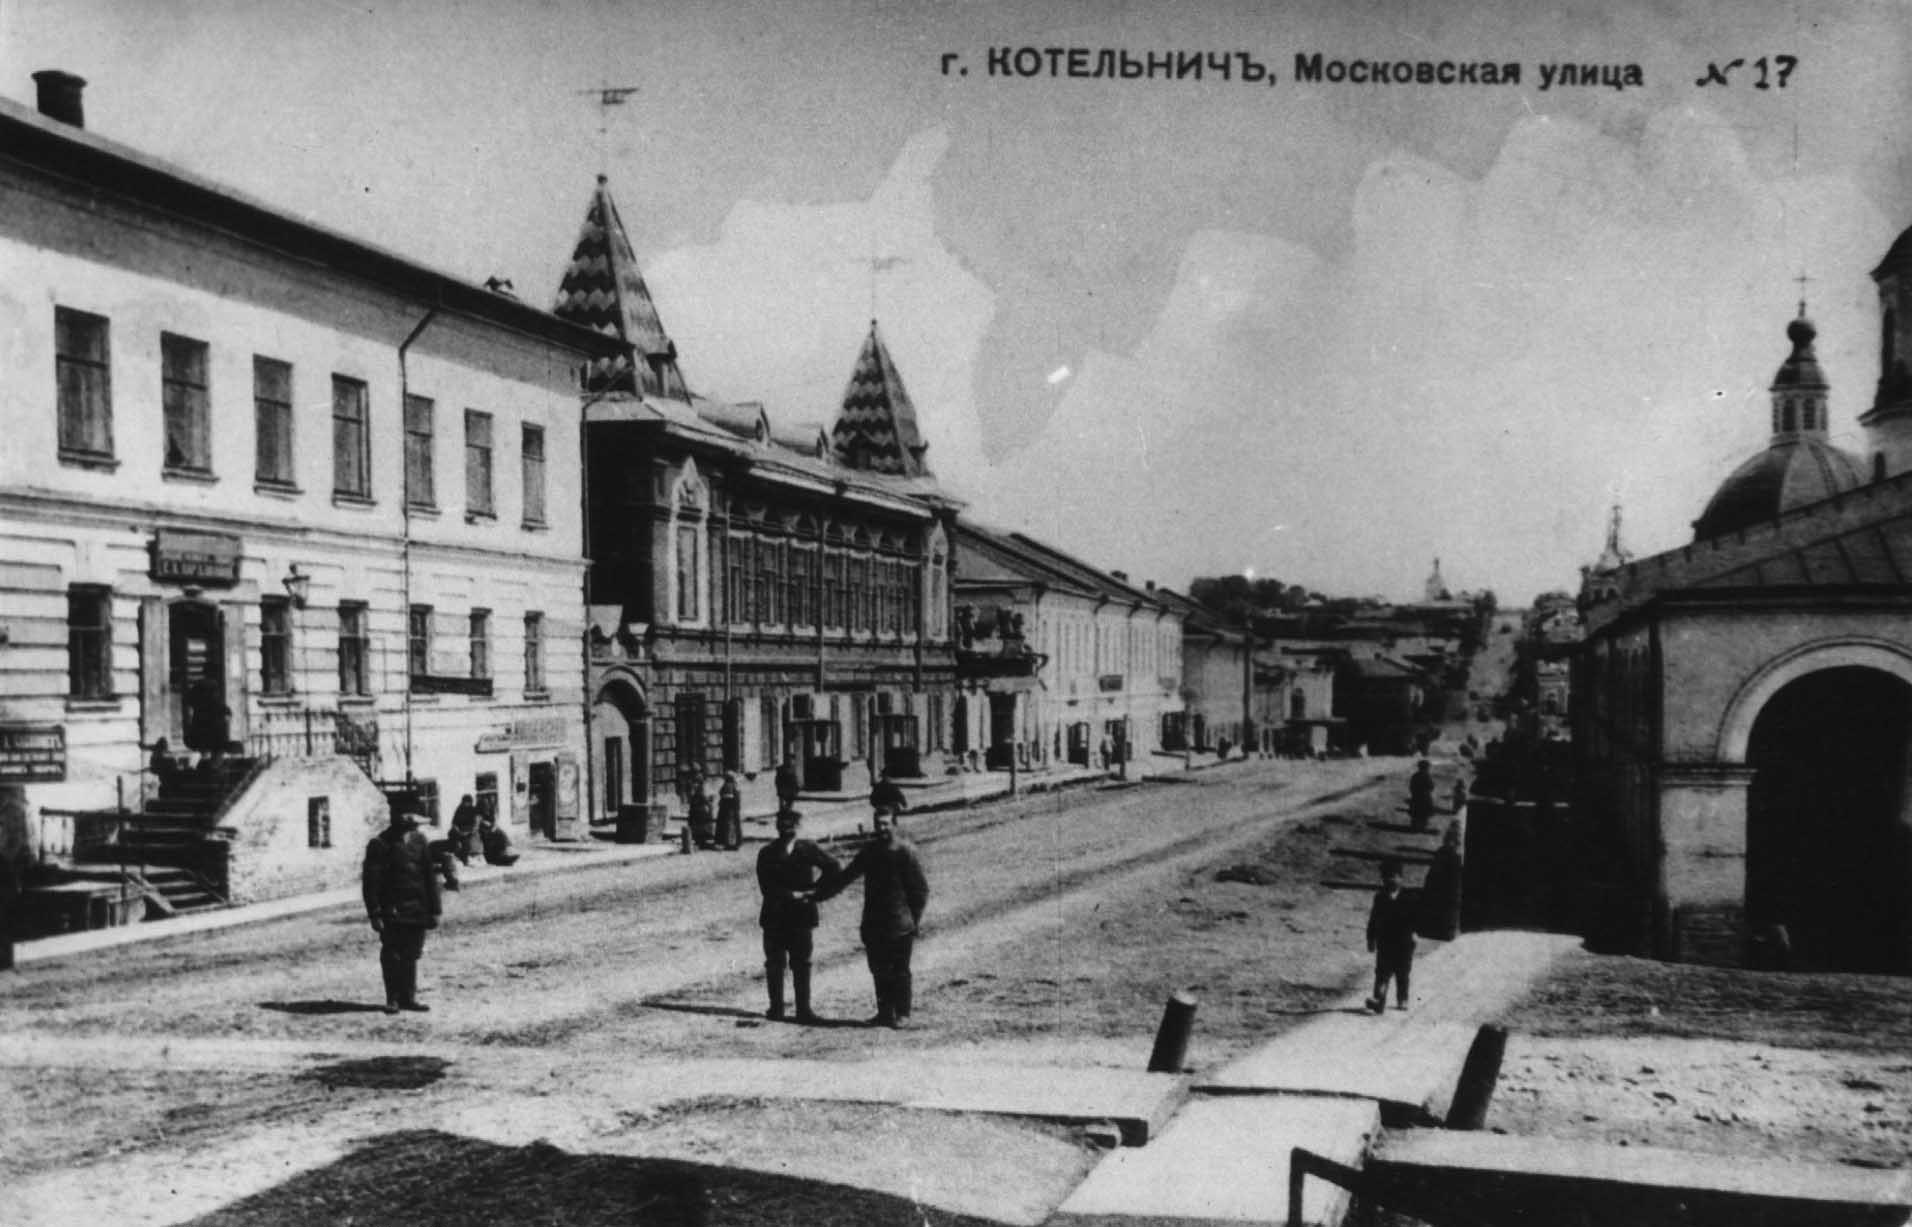 Котельнич. Московская улица